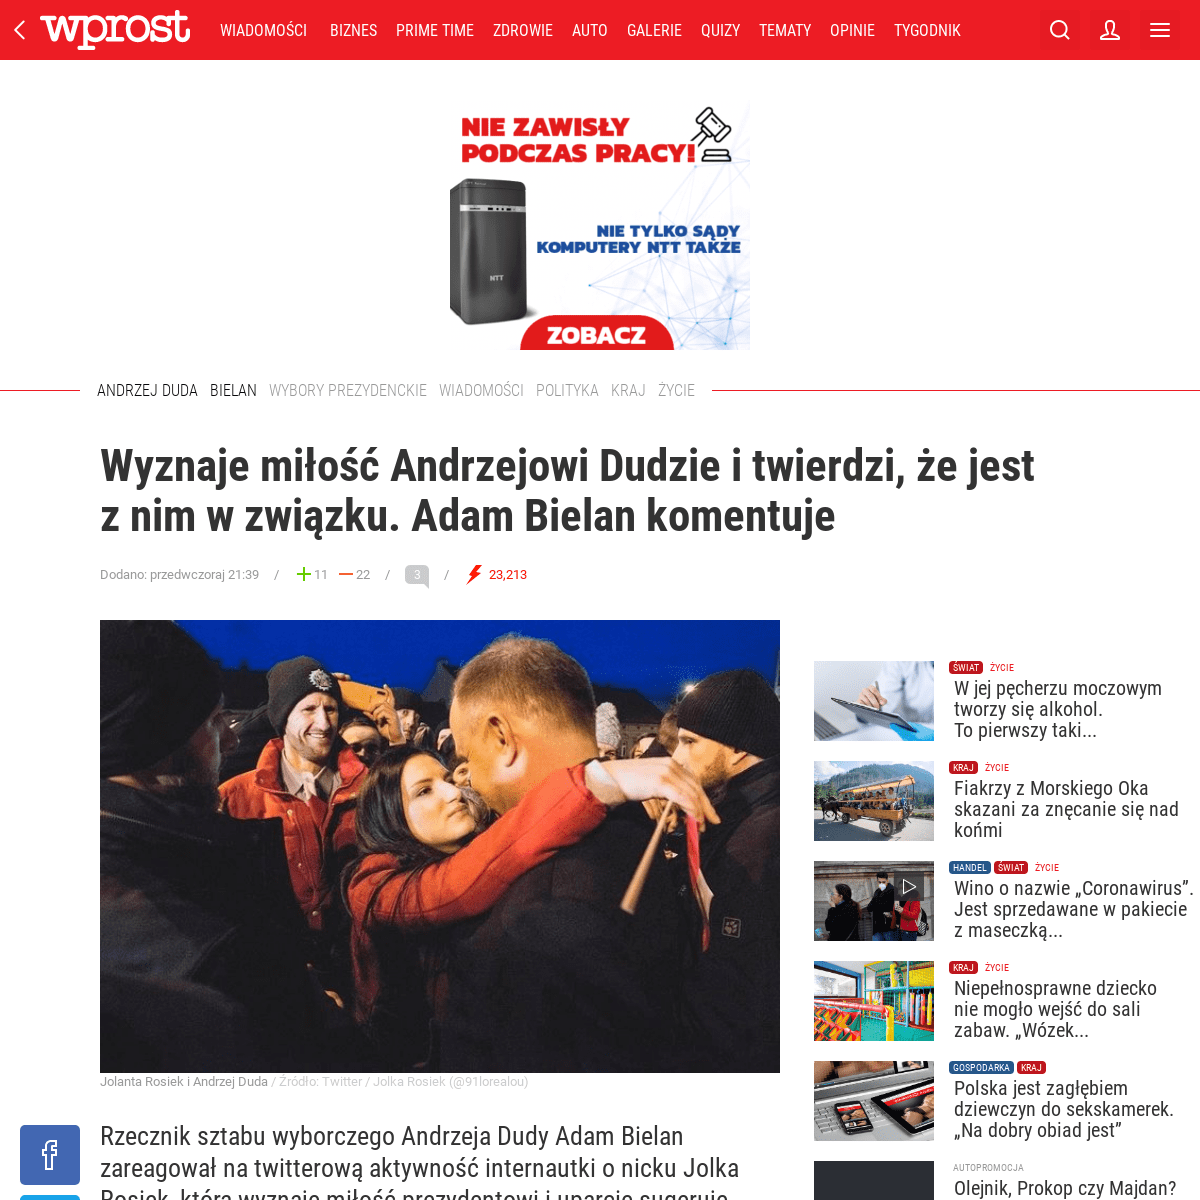 A complete backup of www.wprost.pl/zycie/10301873/wyznaje-milosc-andrzejowi-dudzie-i-twierdzi-ze-jest-z-nim-w-zwiazku-adam-biela